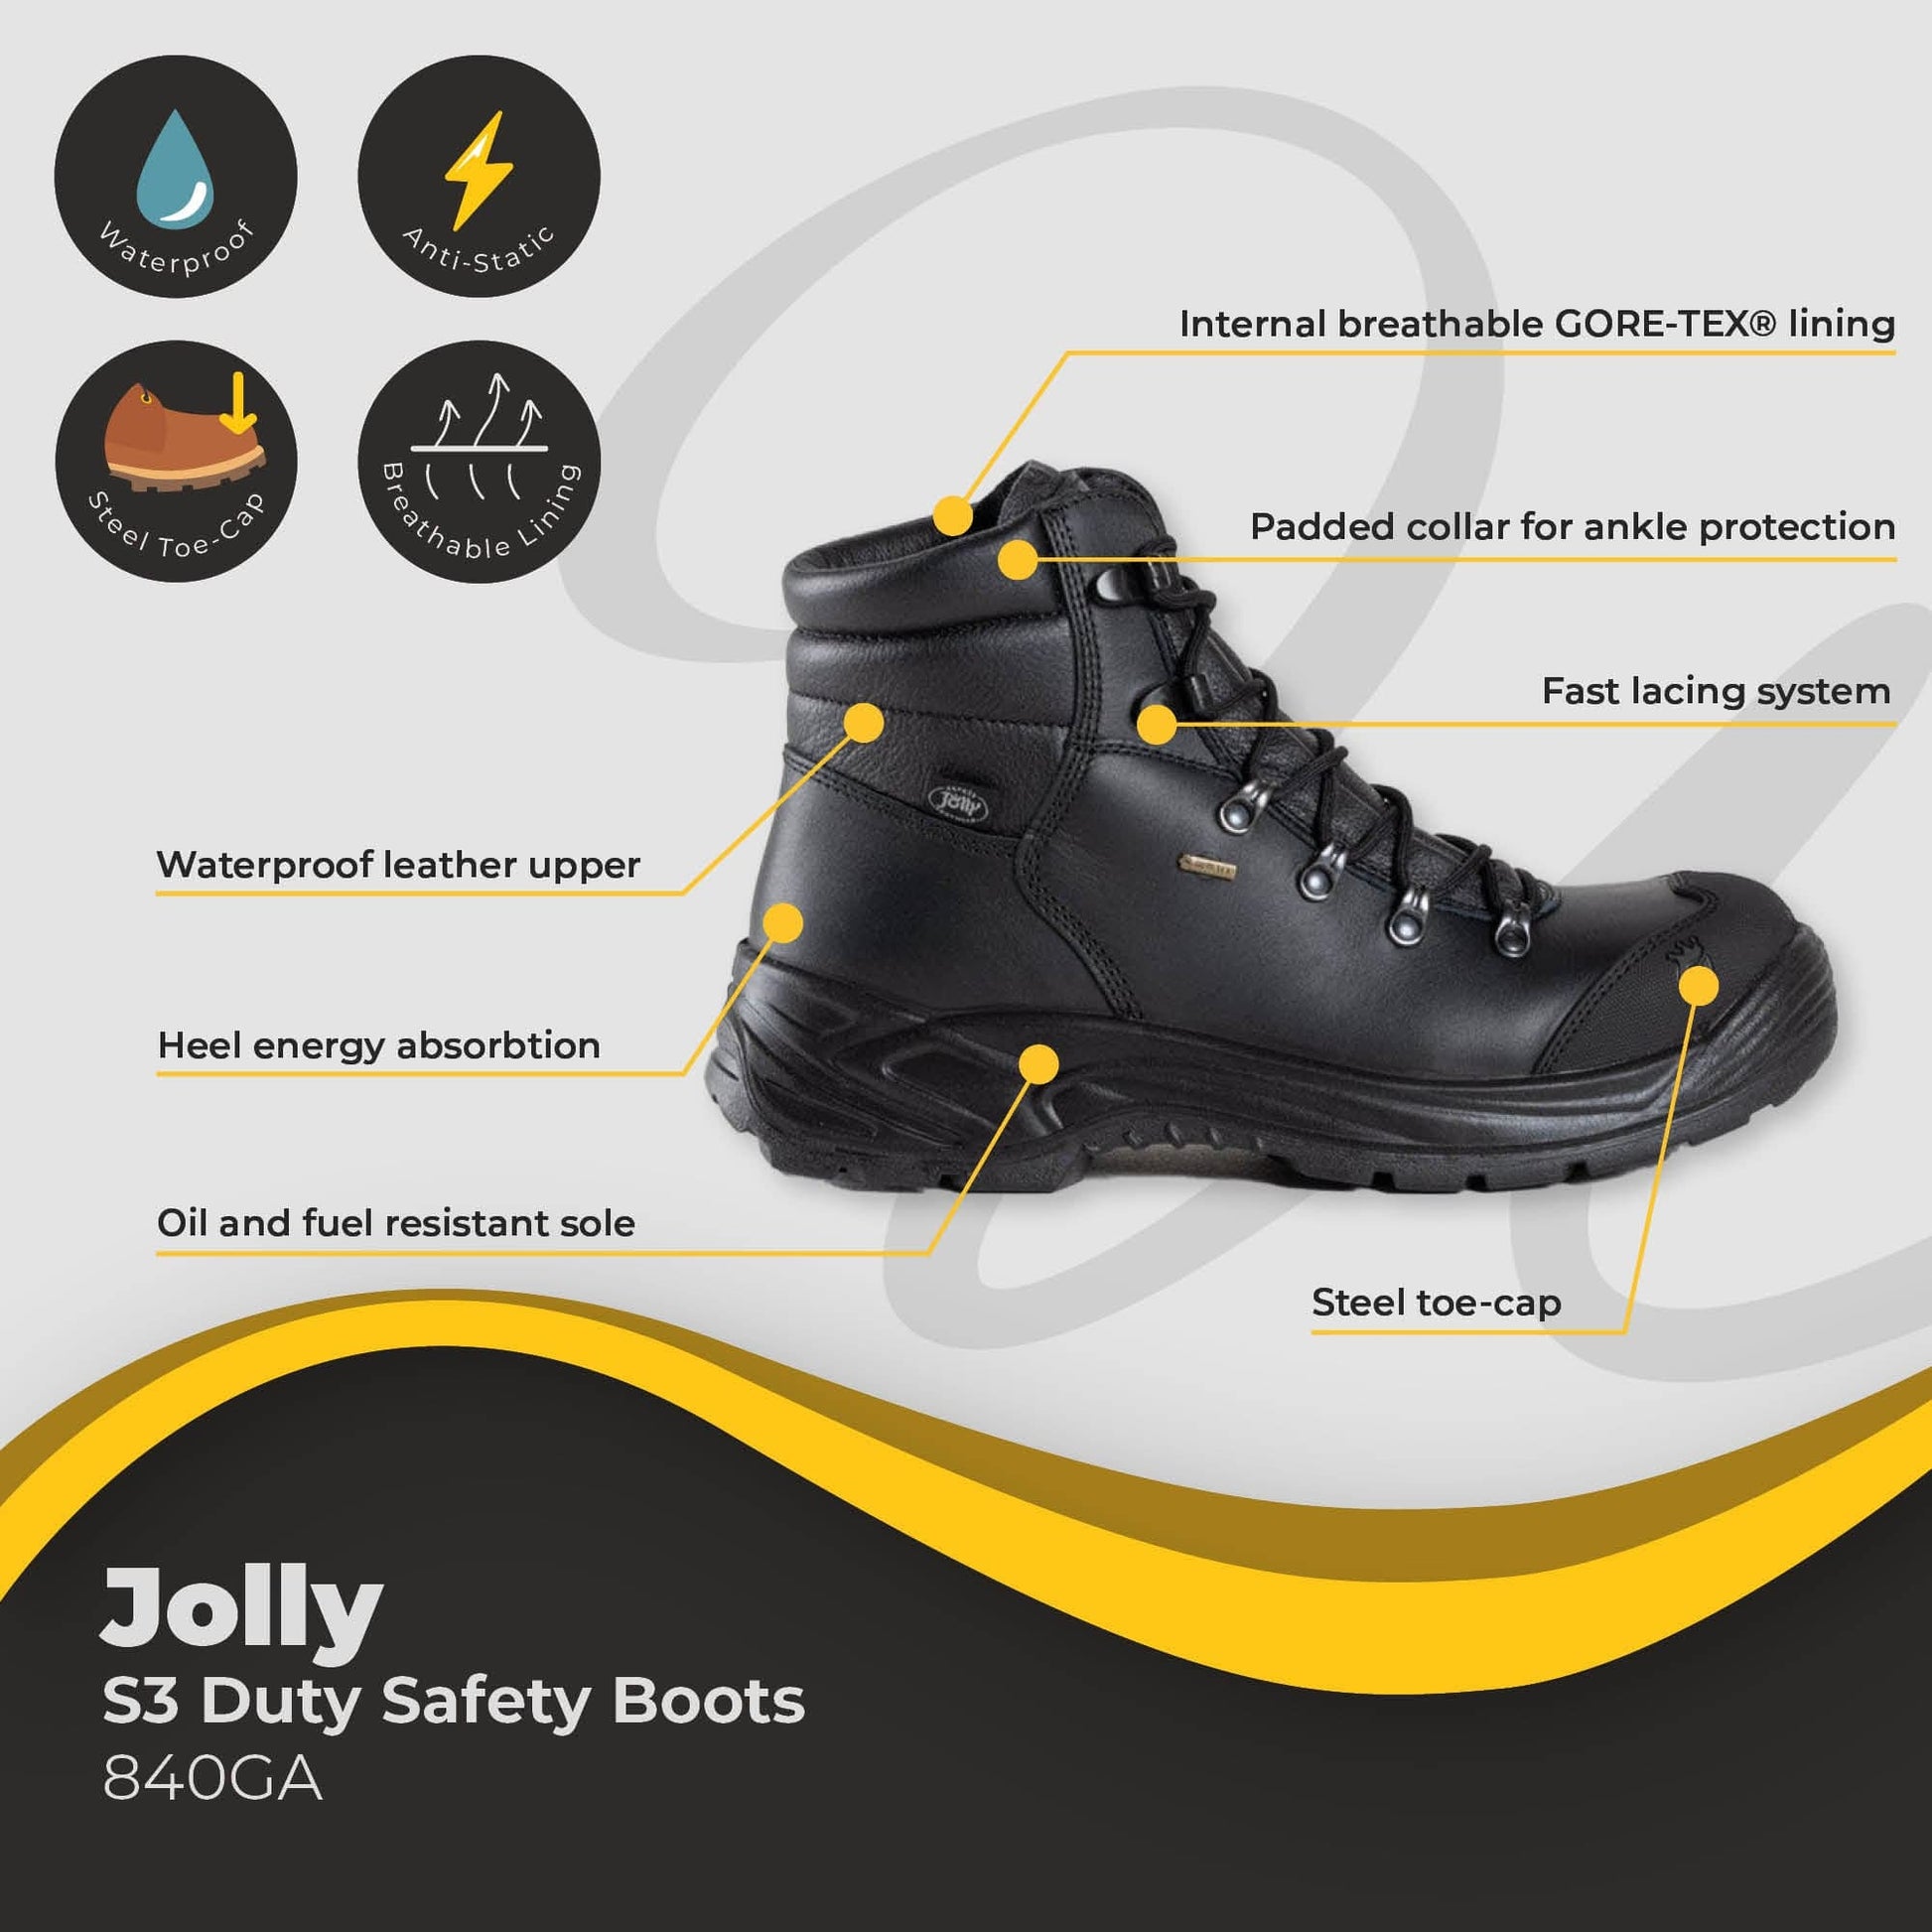 jolly boot 840ga duty boot s3